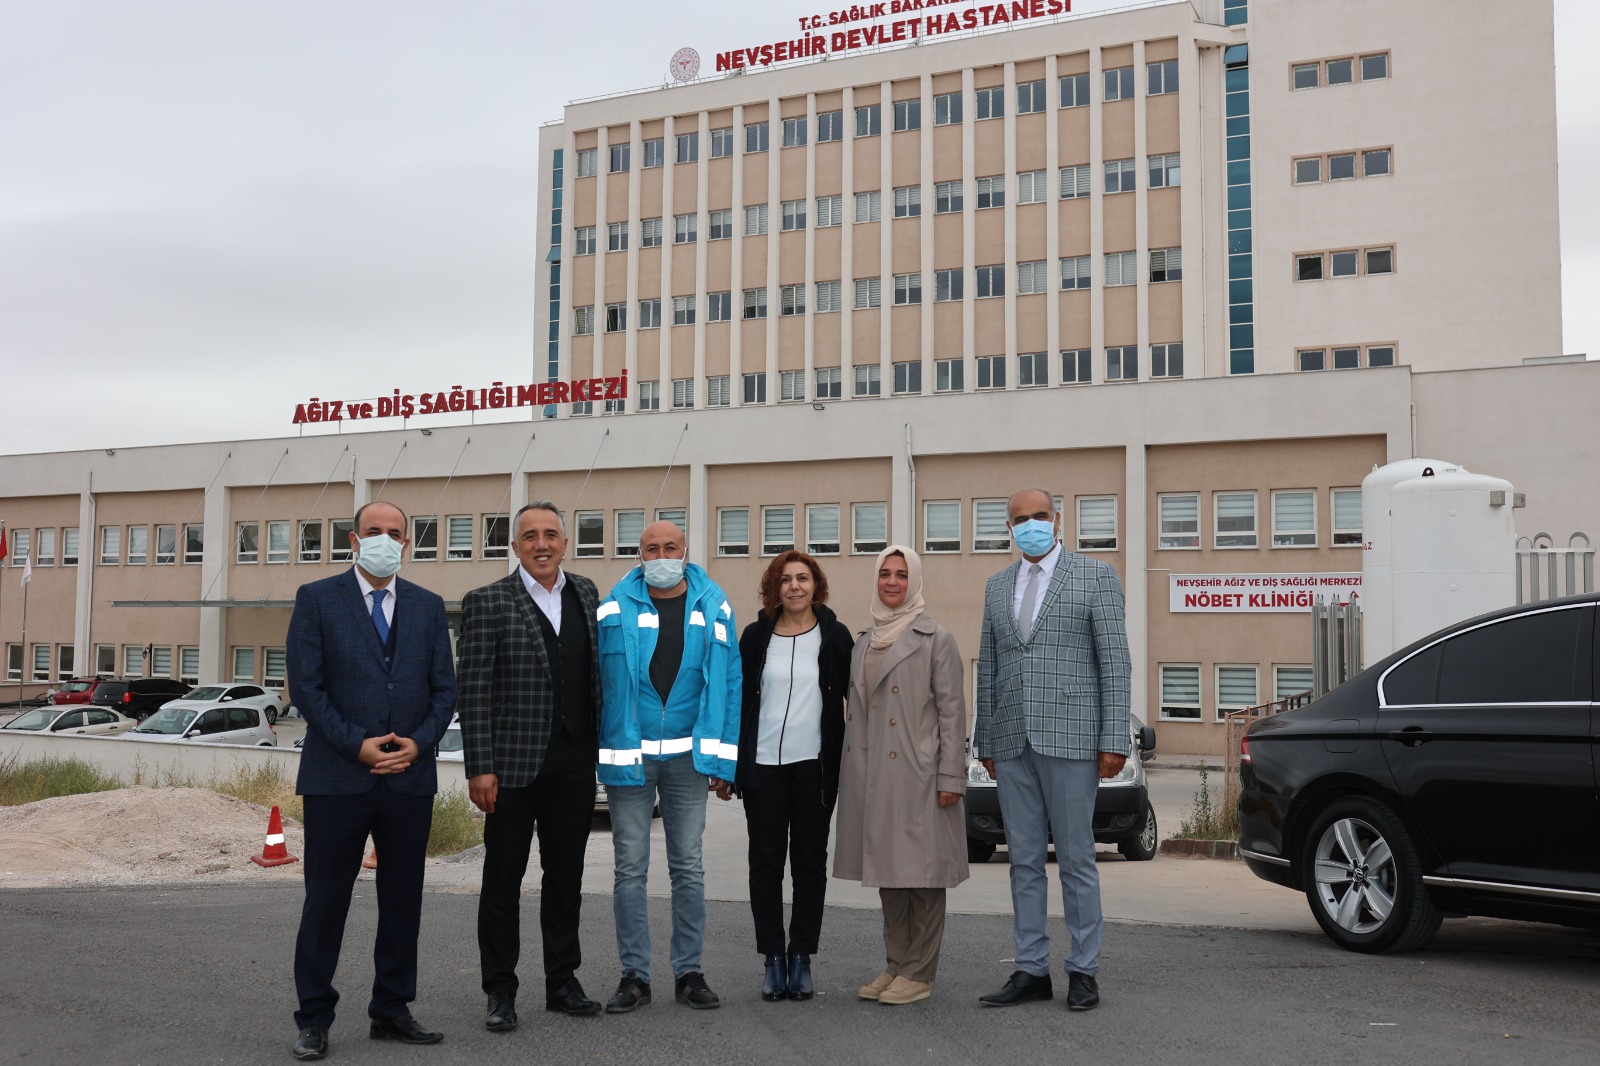 Nevşehir Belediye Başkanımız Sayın Dr. Mehmet SAVRAN'dan kurumumuza ziyaret.